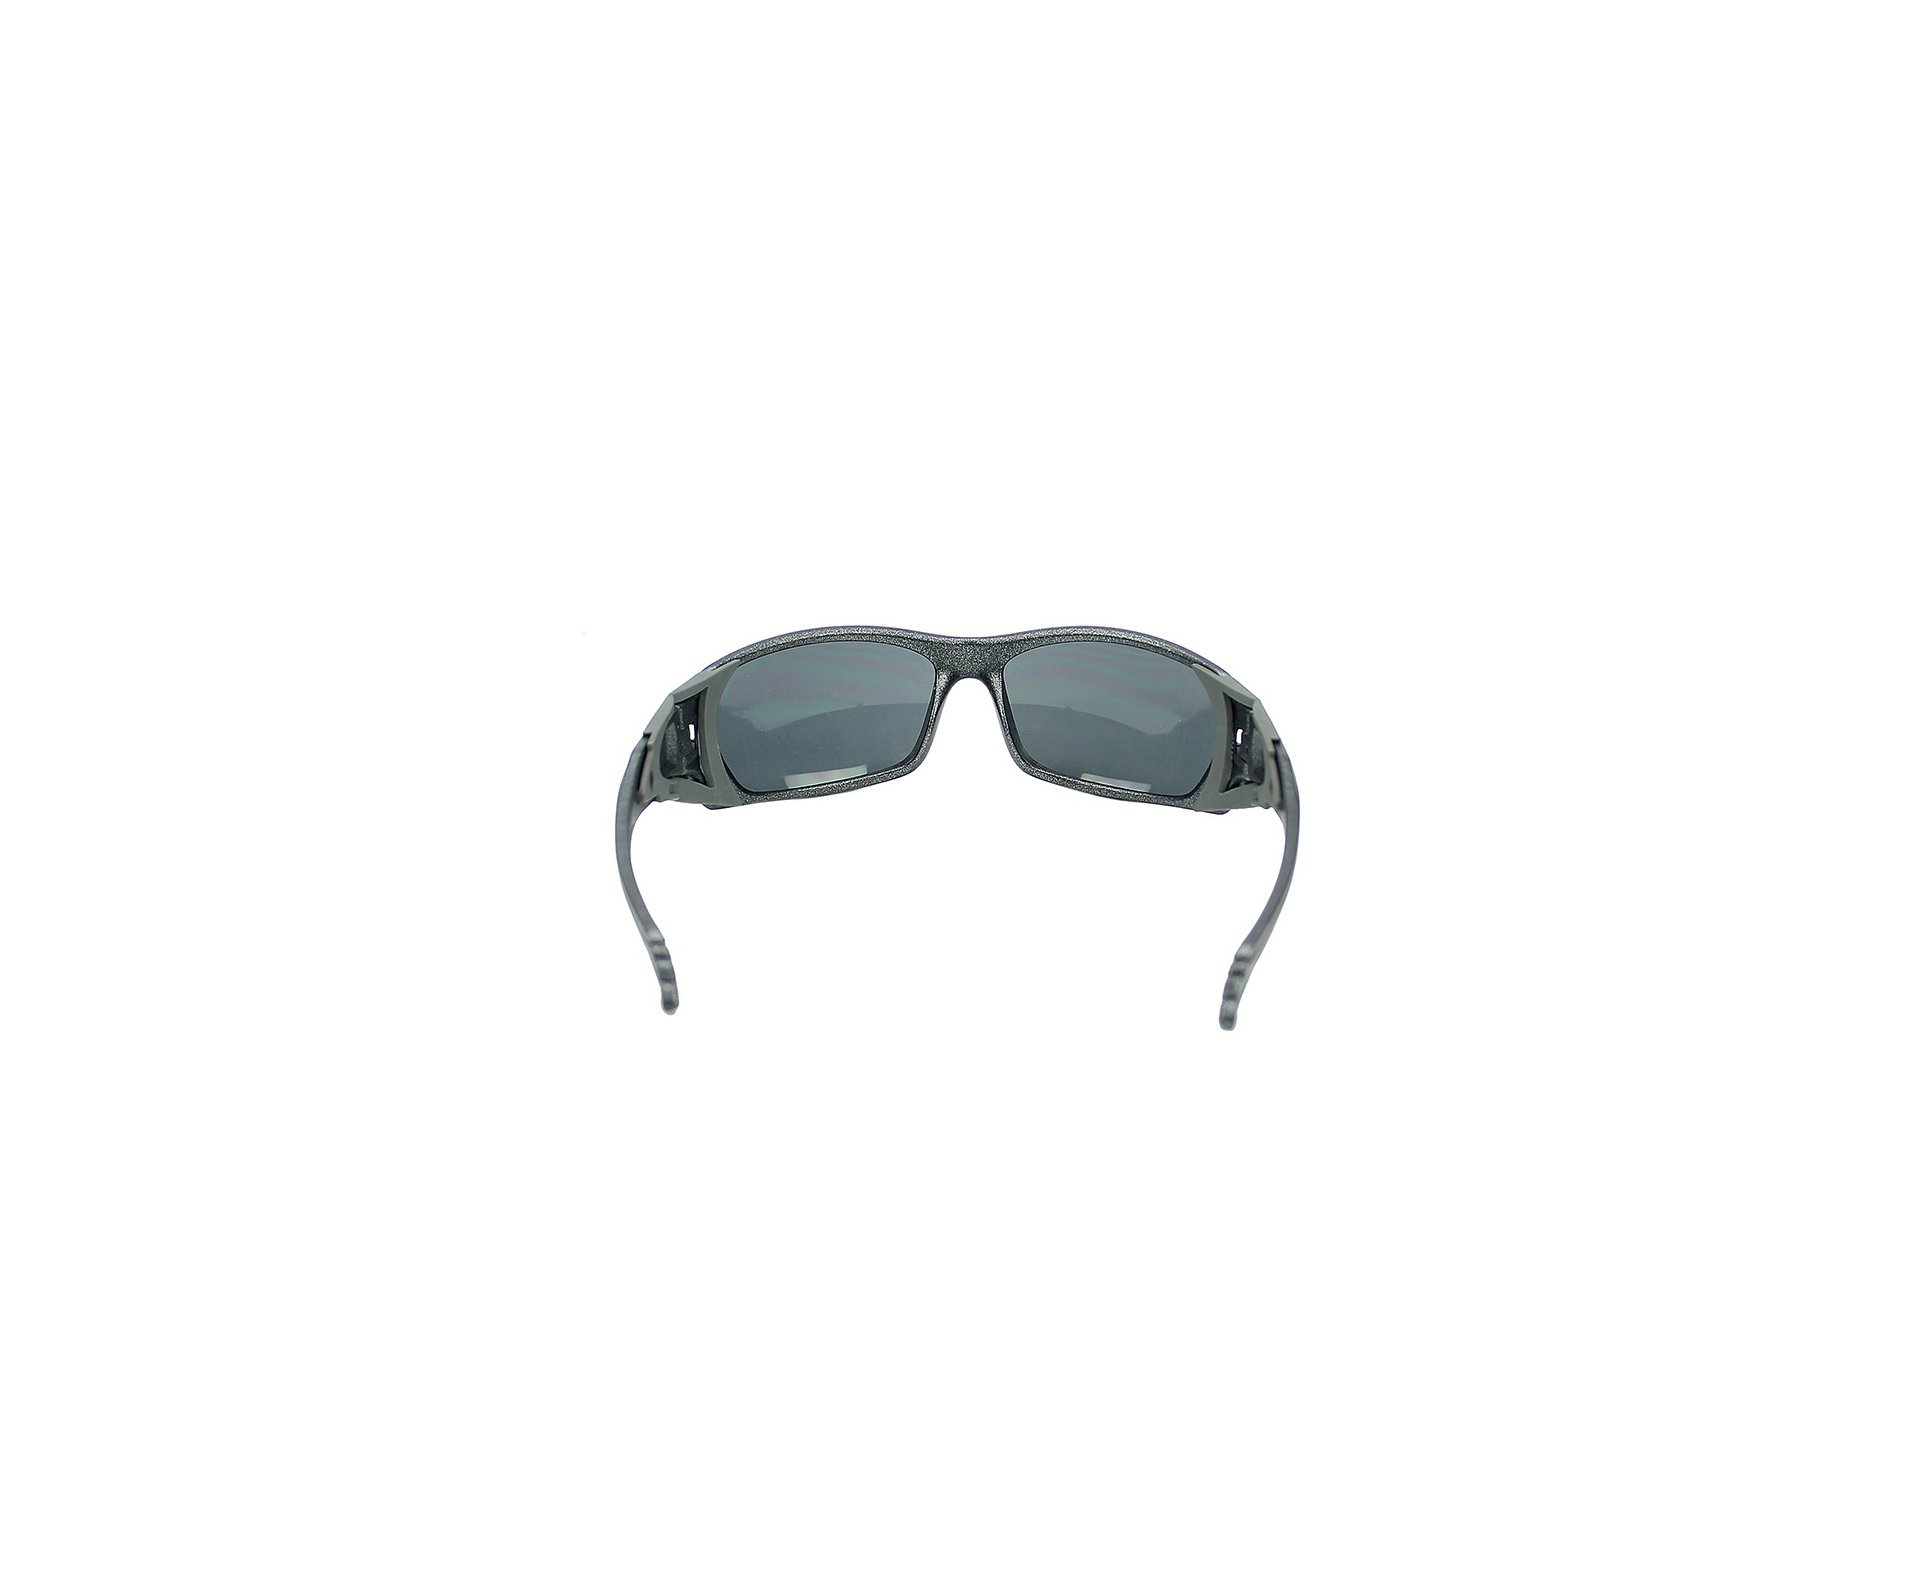 Óculos Balístico com Armação Prata - Lente Prata 20542 - C891 - Insano Shades